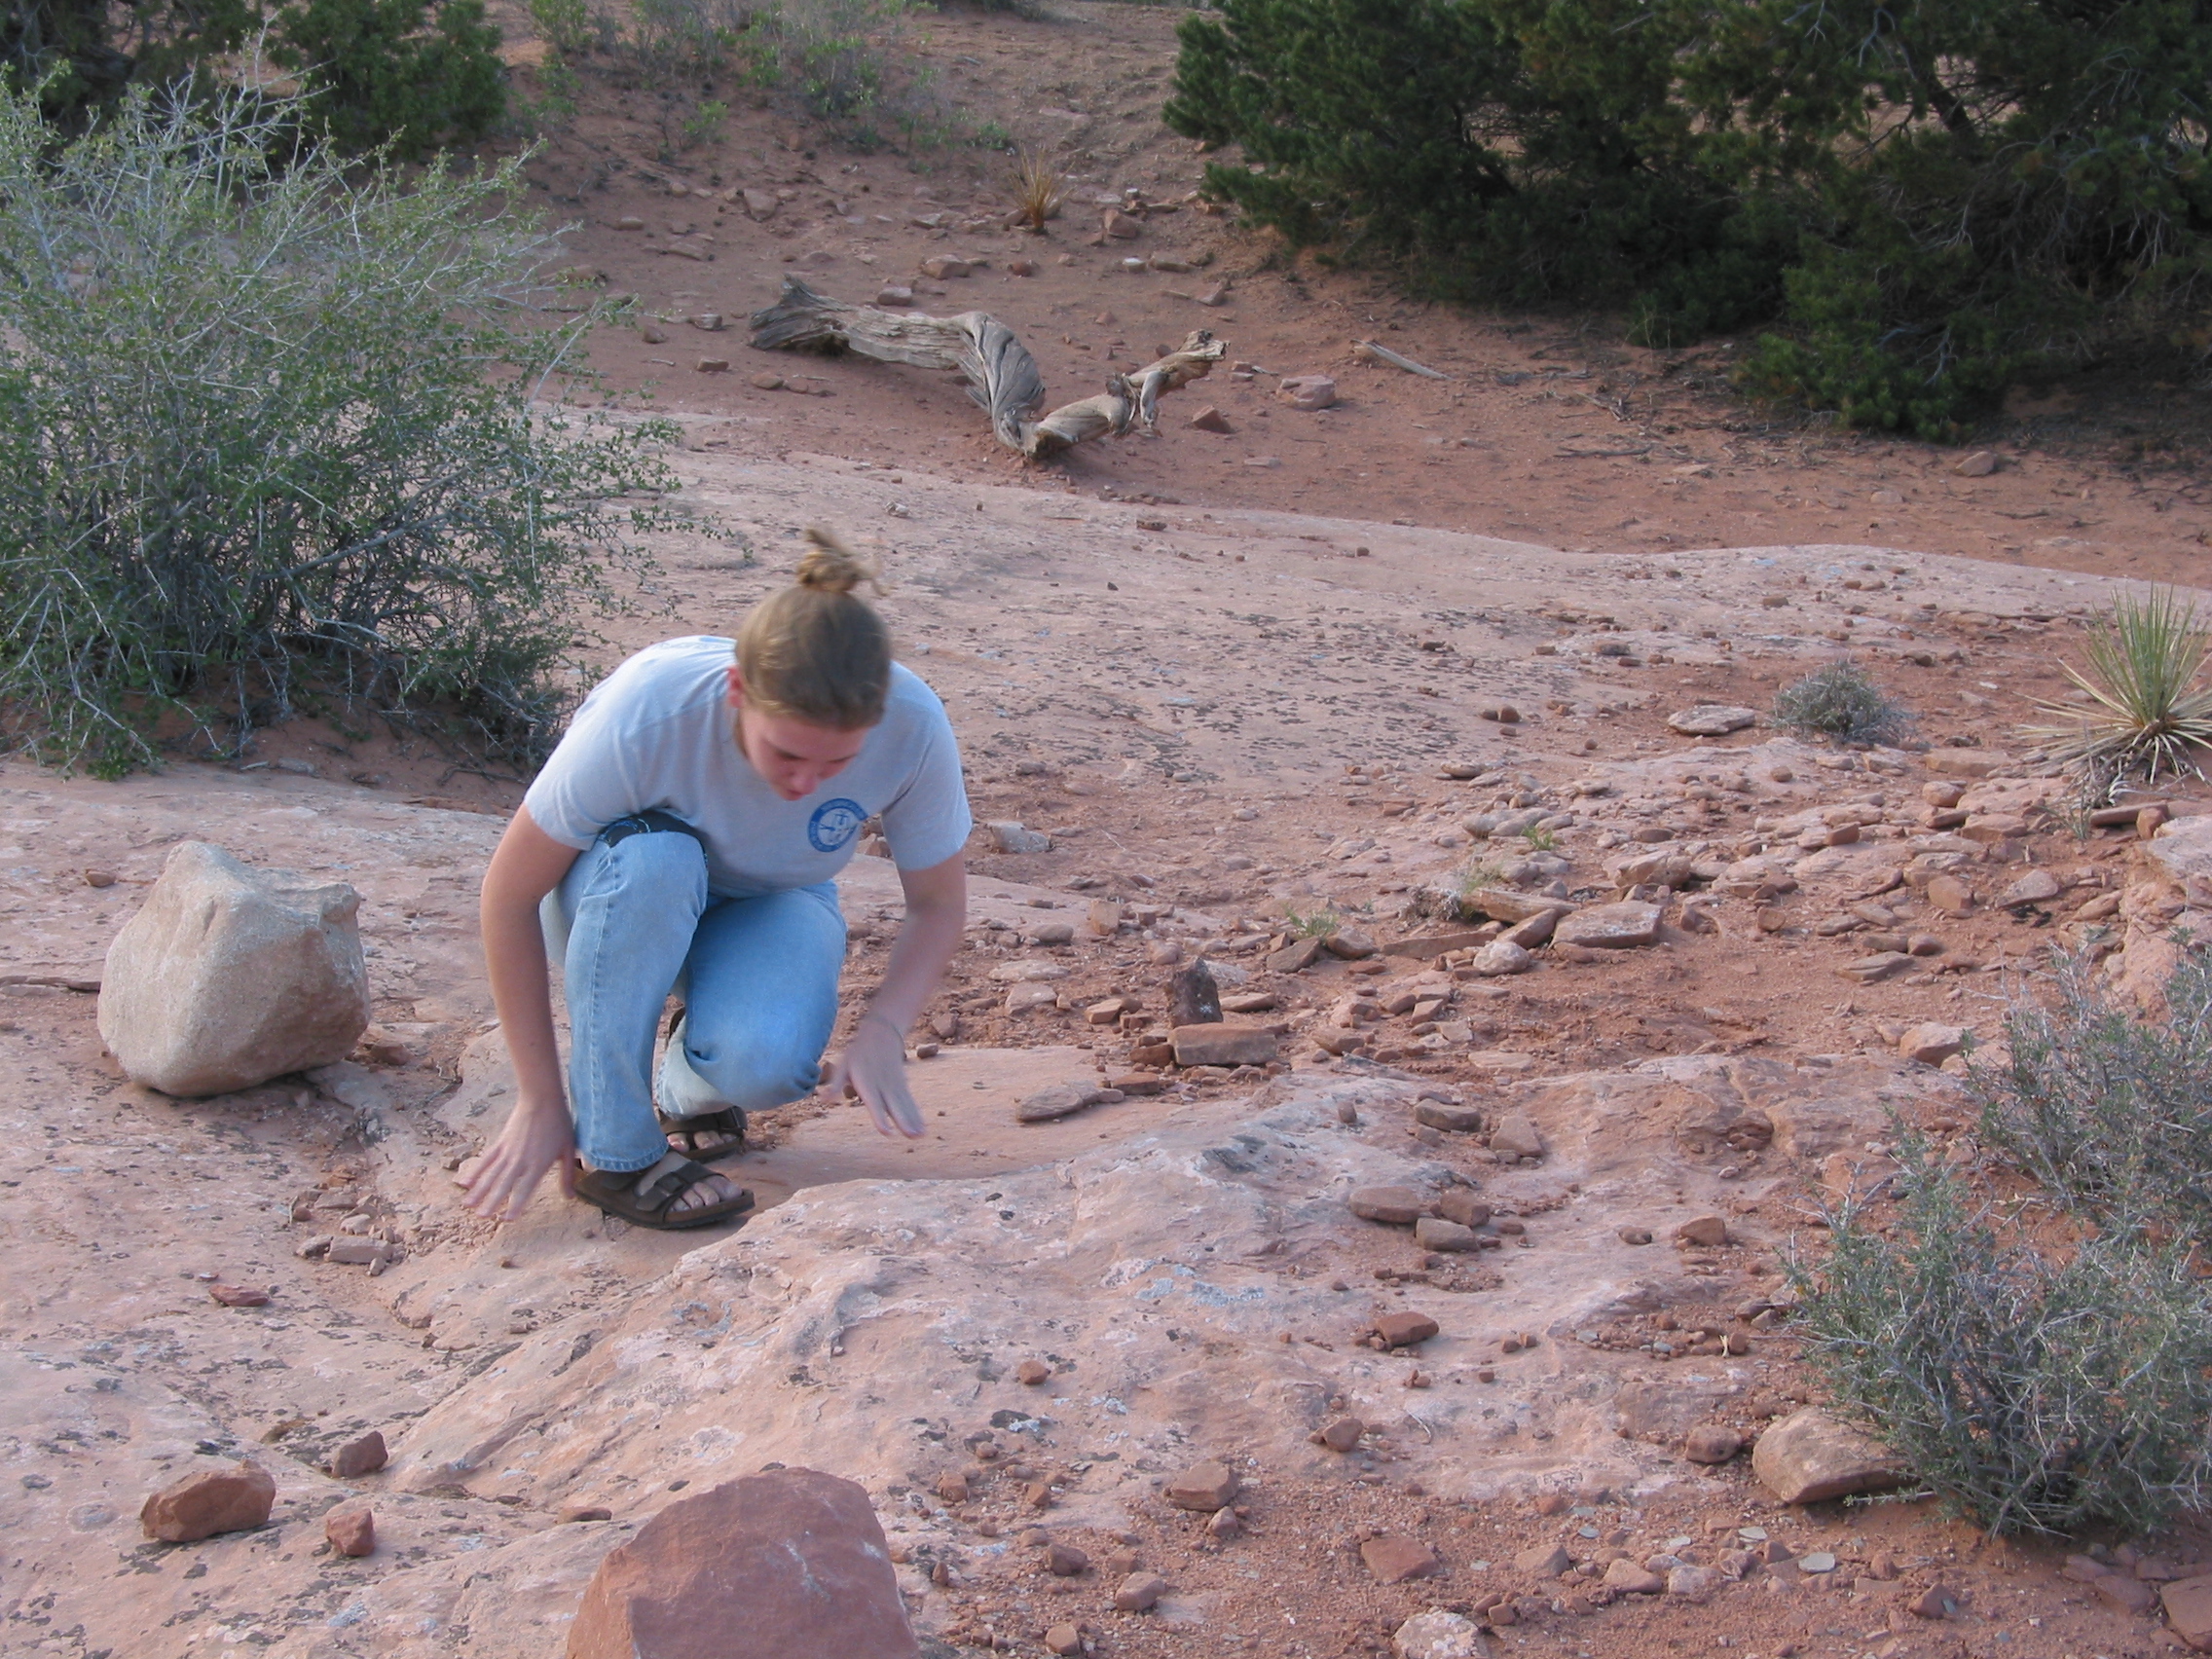 Ana examining rocks